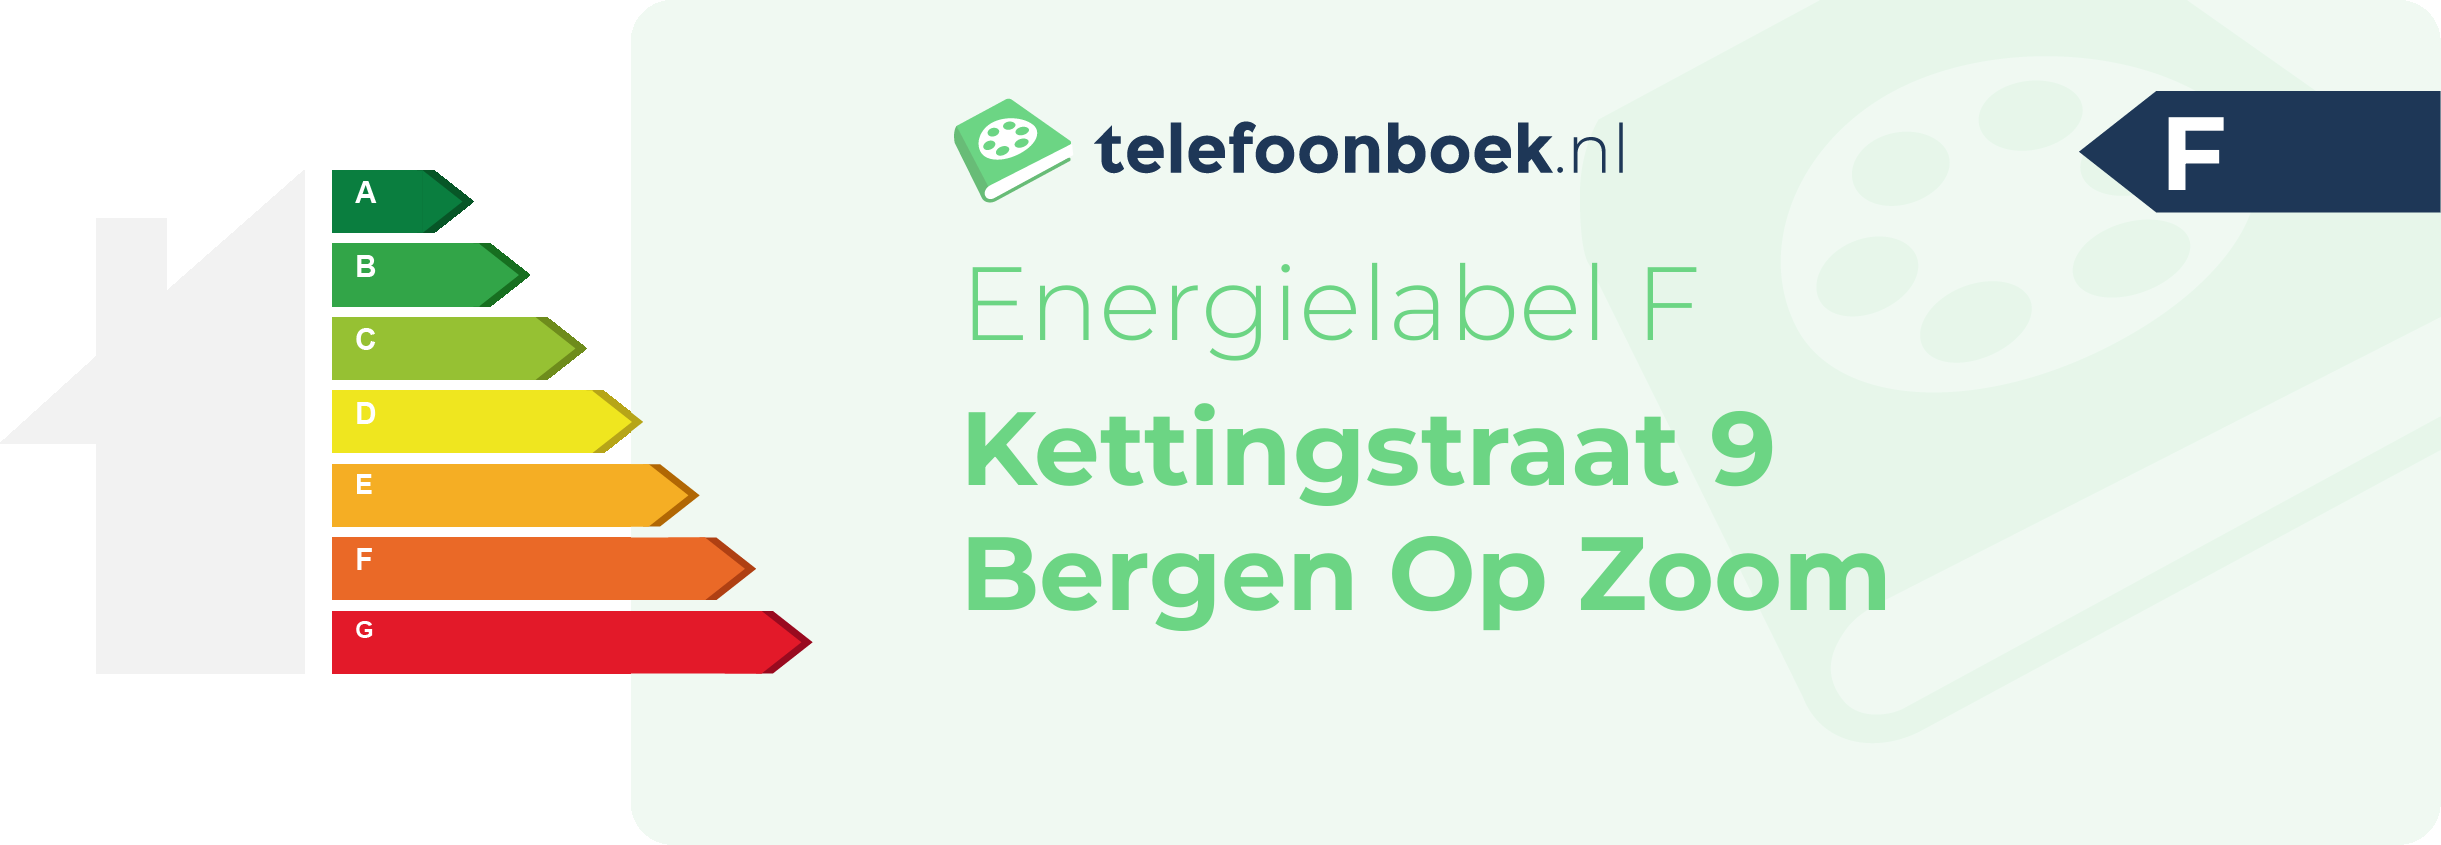 Energielabel Kettingstraat 9 Bergen Op Zoom